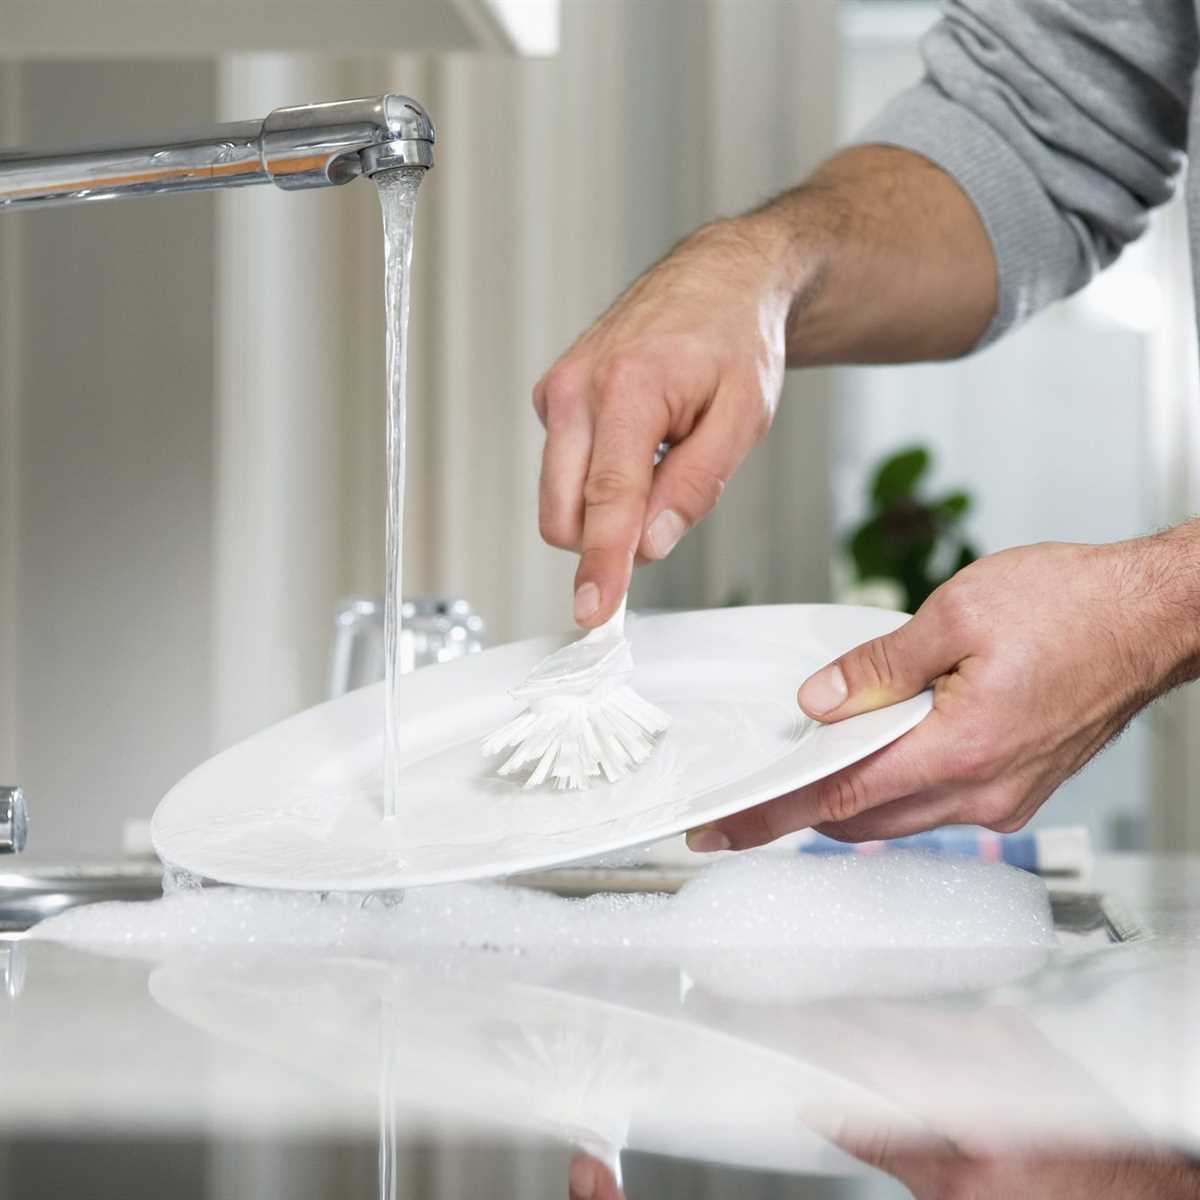 6. Dishwasher Detergent